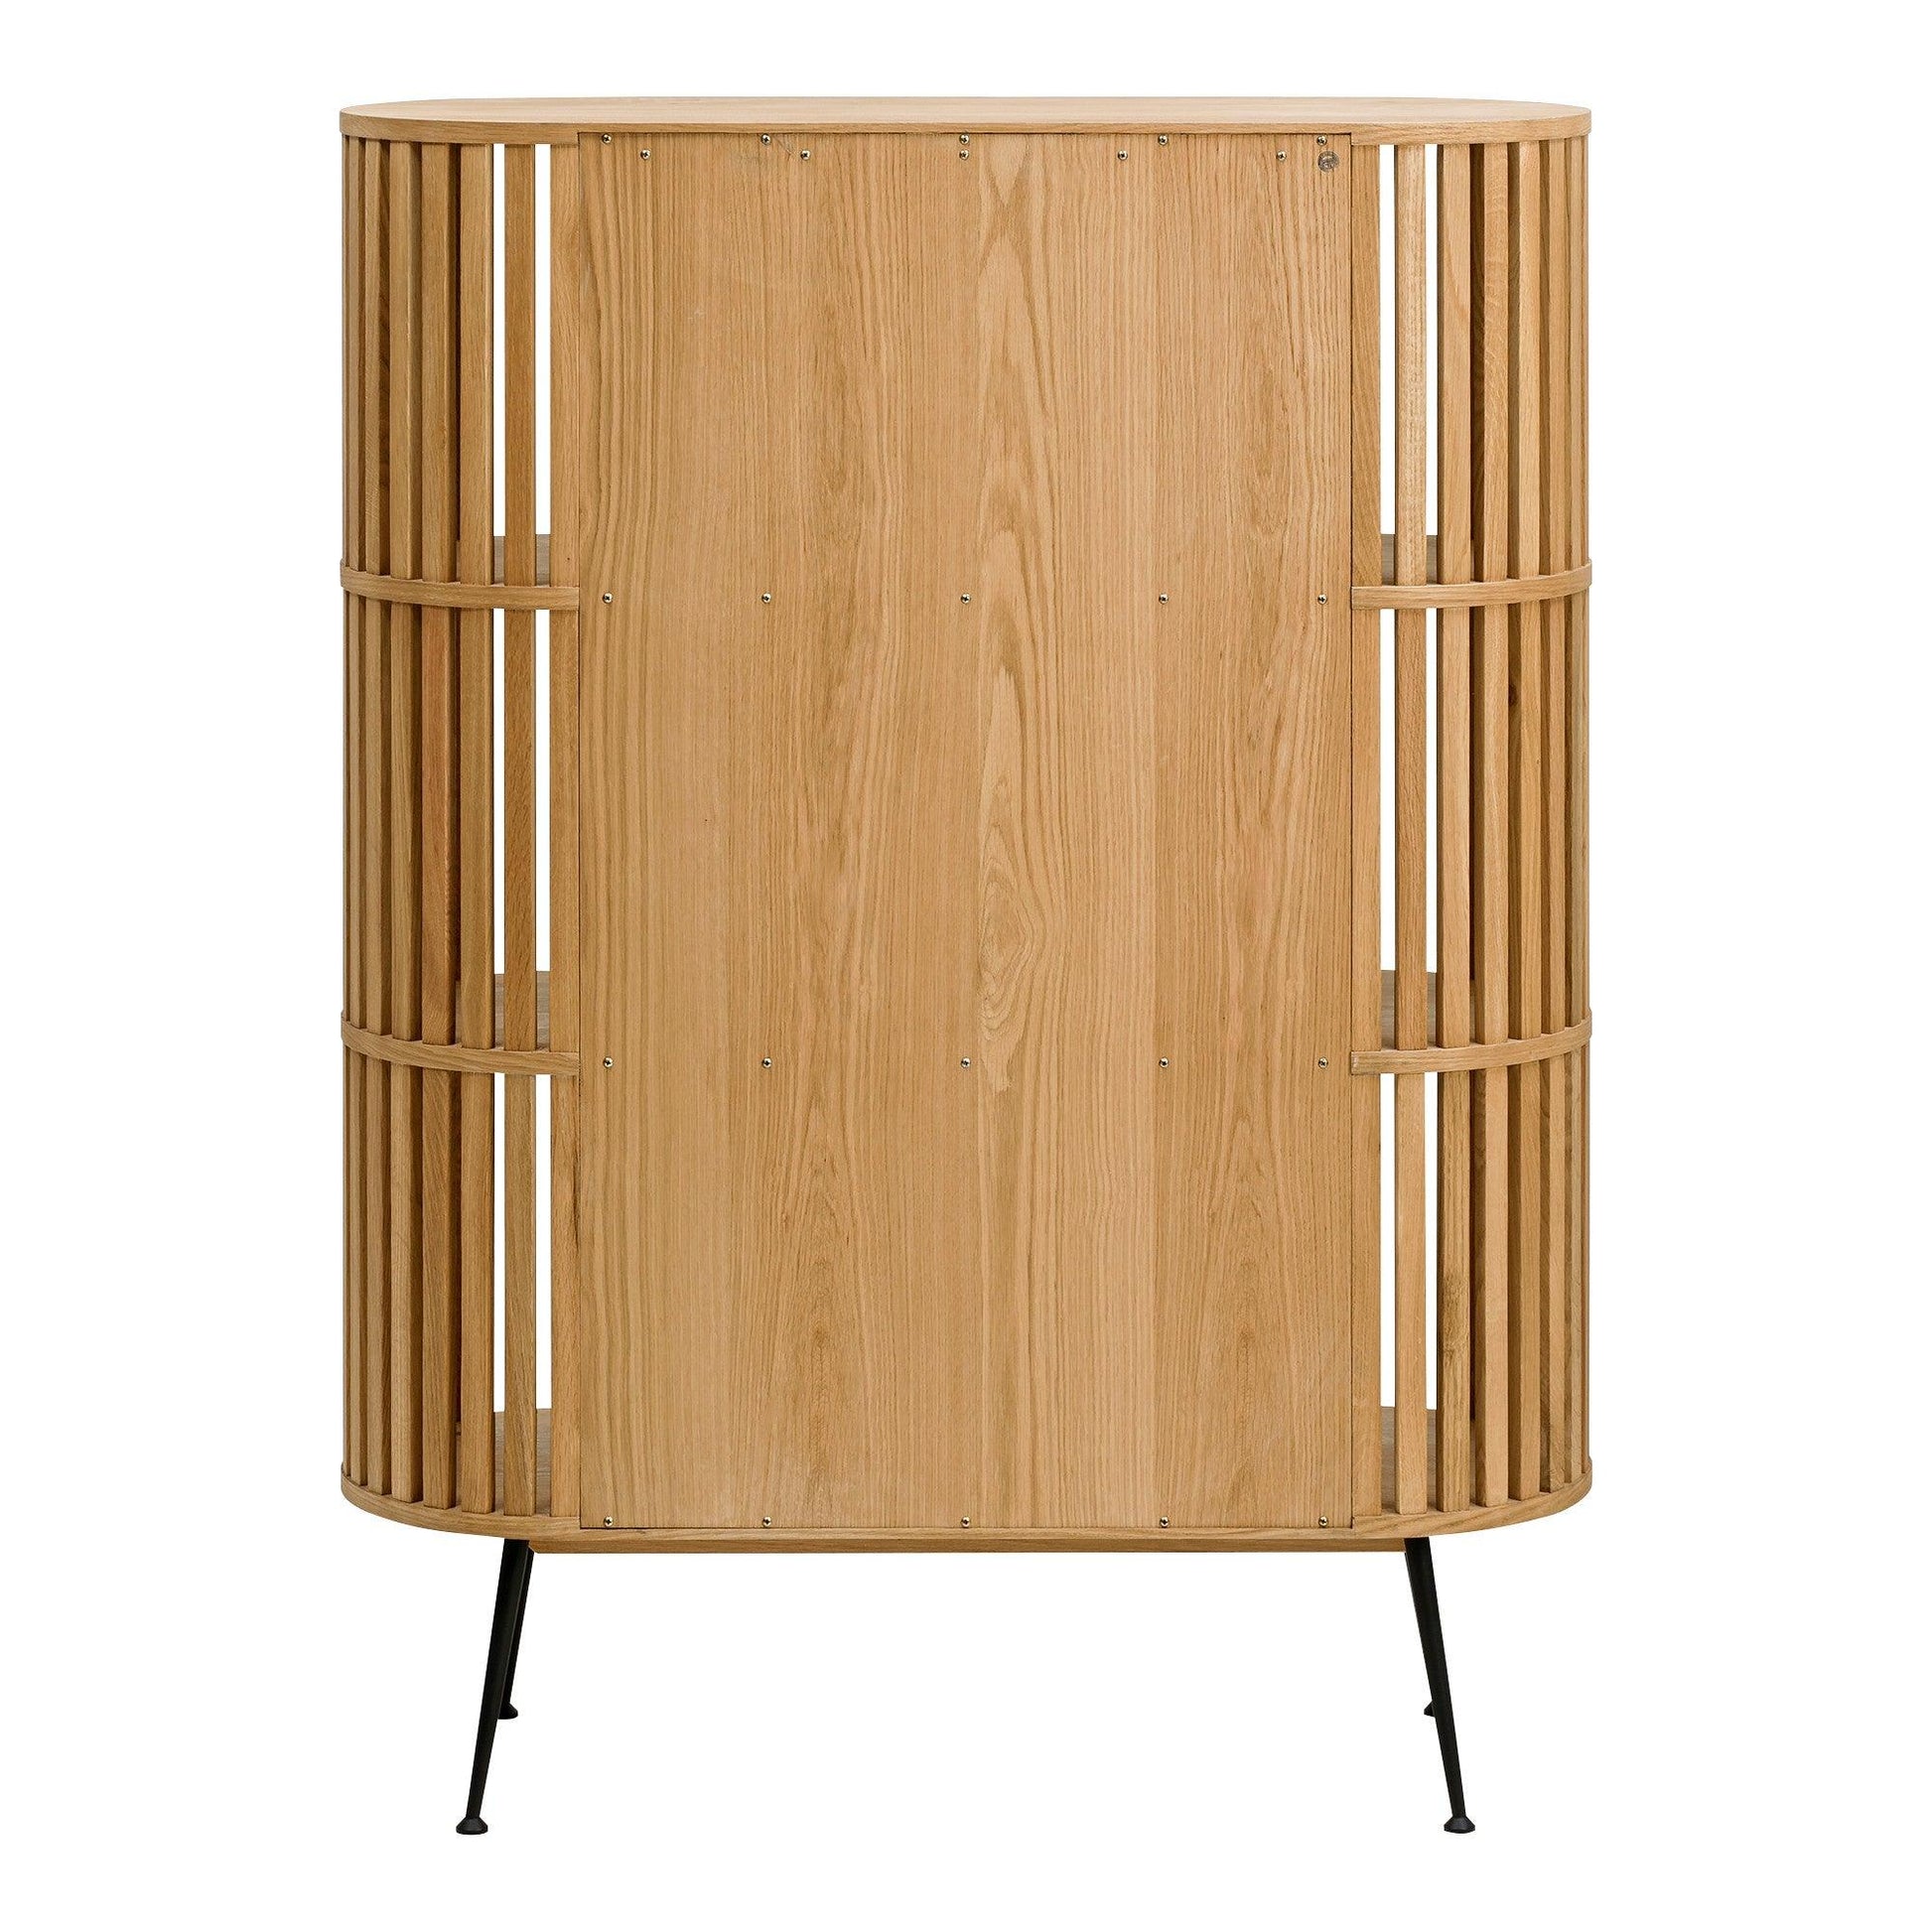 57" White Wood Three Tier Standard Bookcase - FurniFindUSA